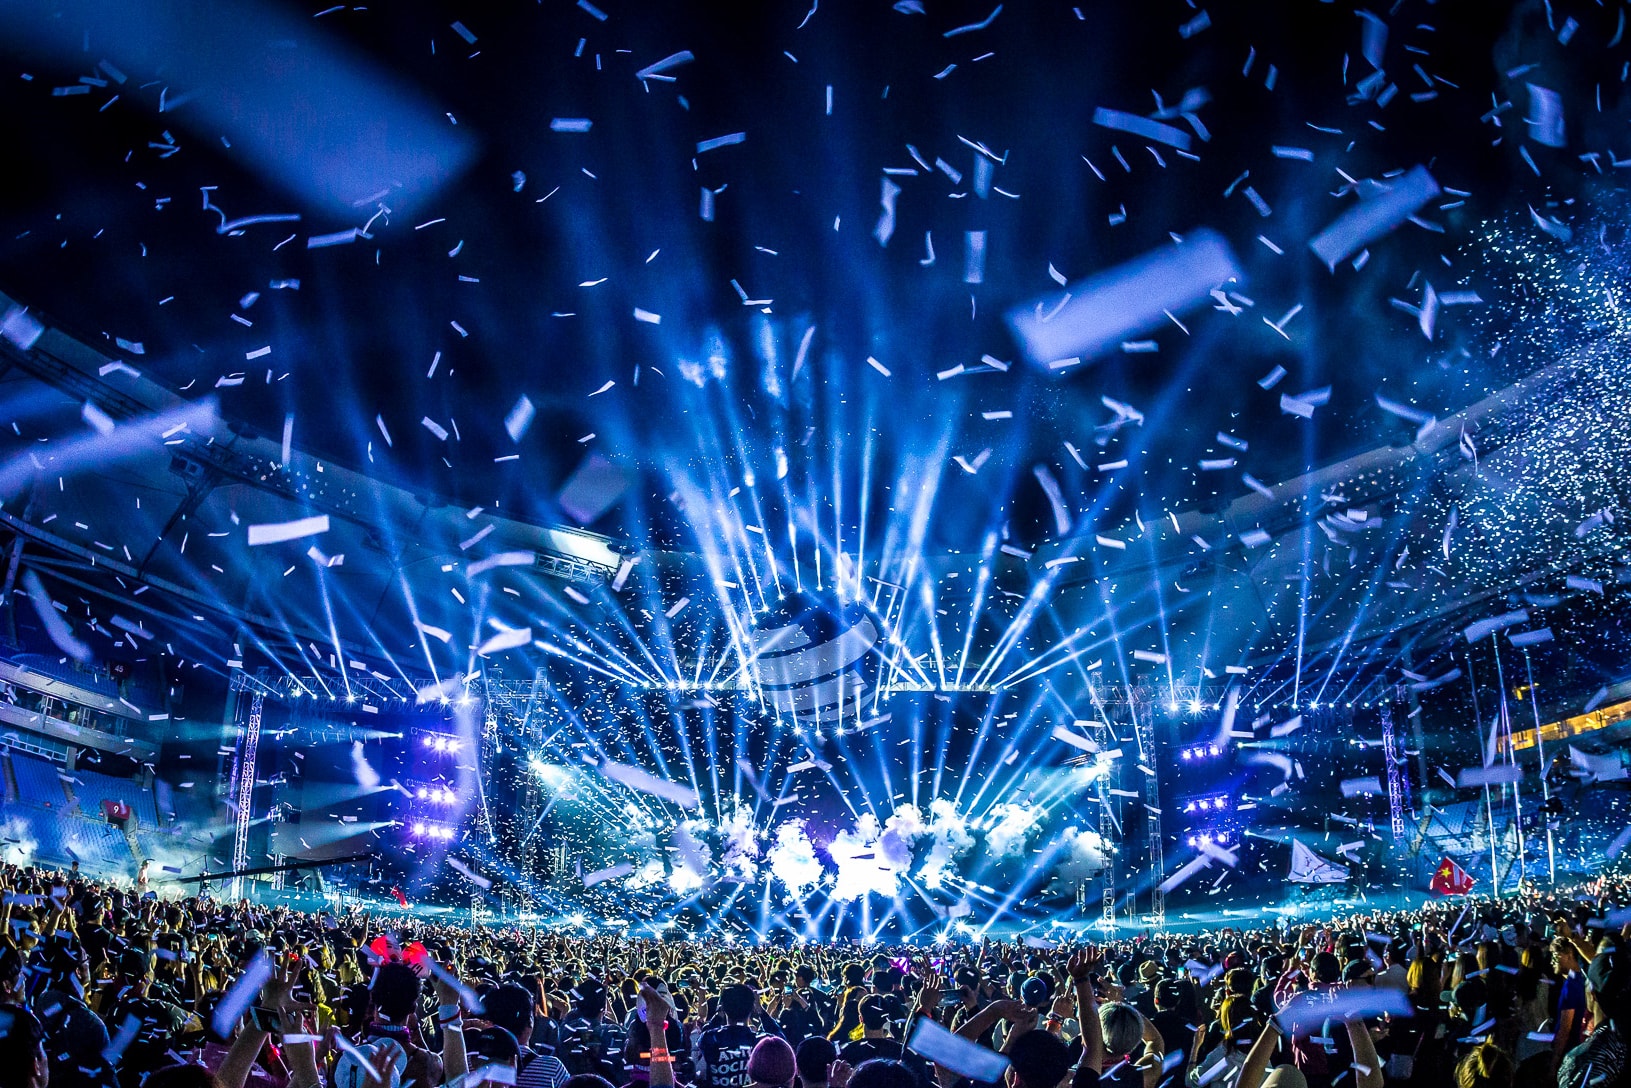 亚洲最大规模 EDM 盛会 World Club Dome 2018 即将登陆韩国